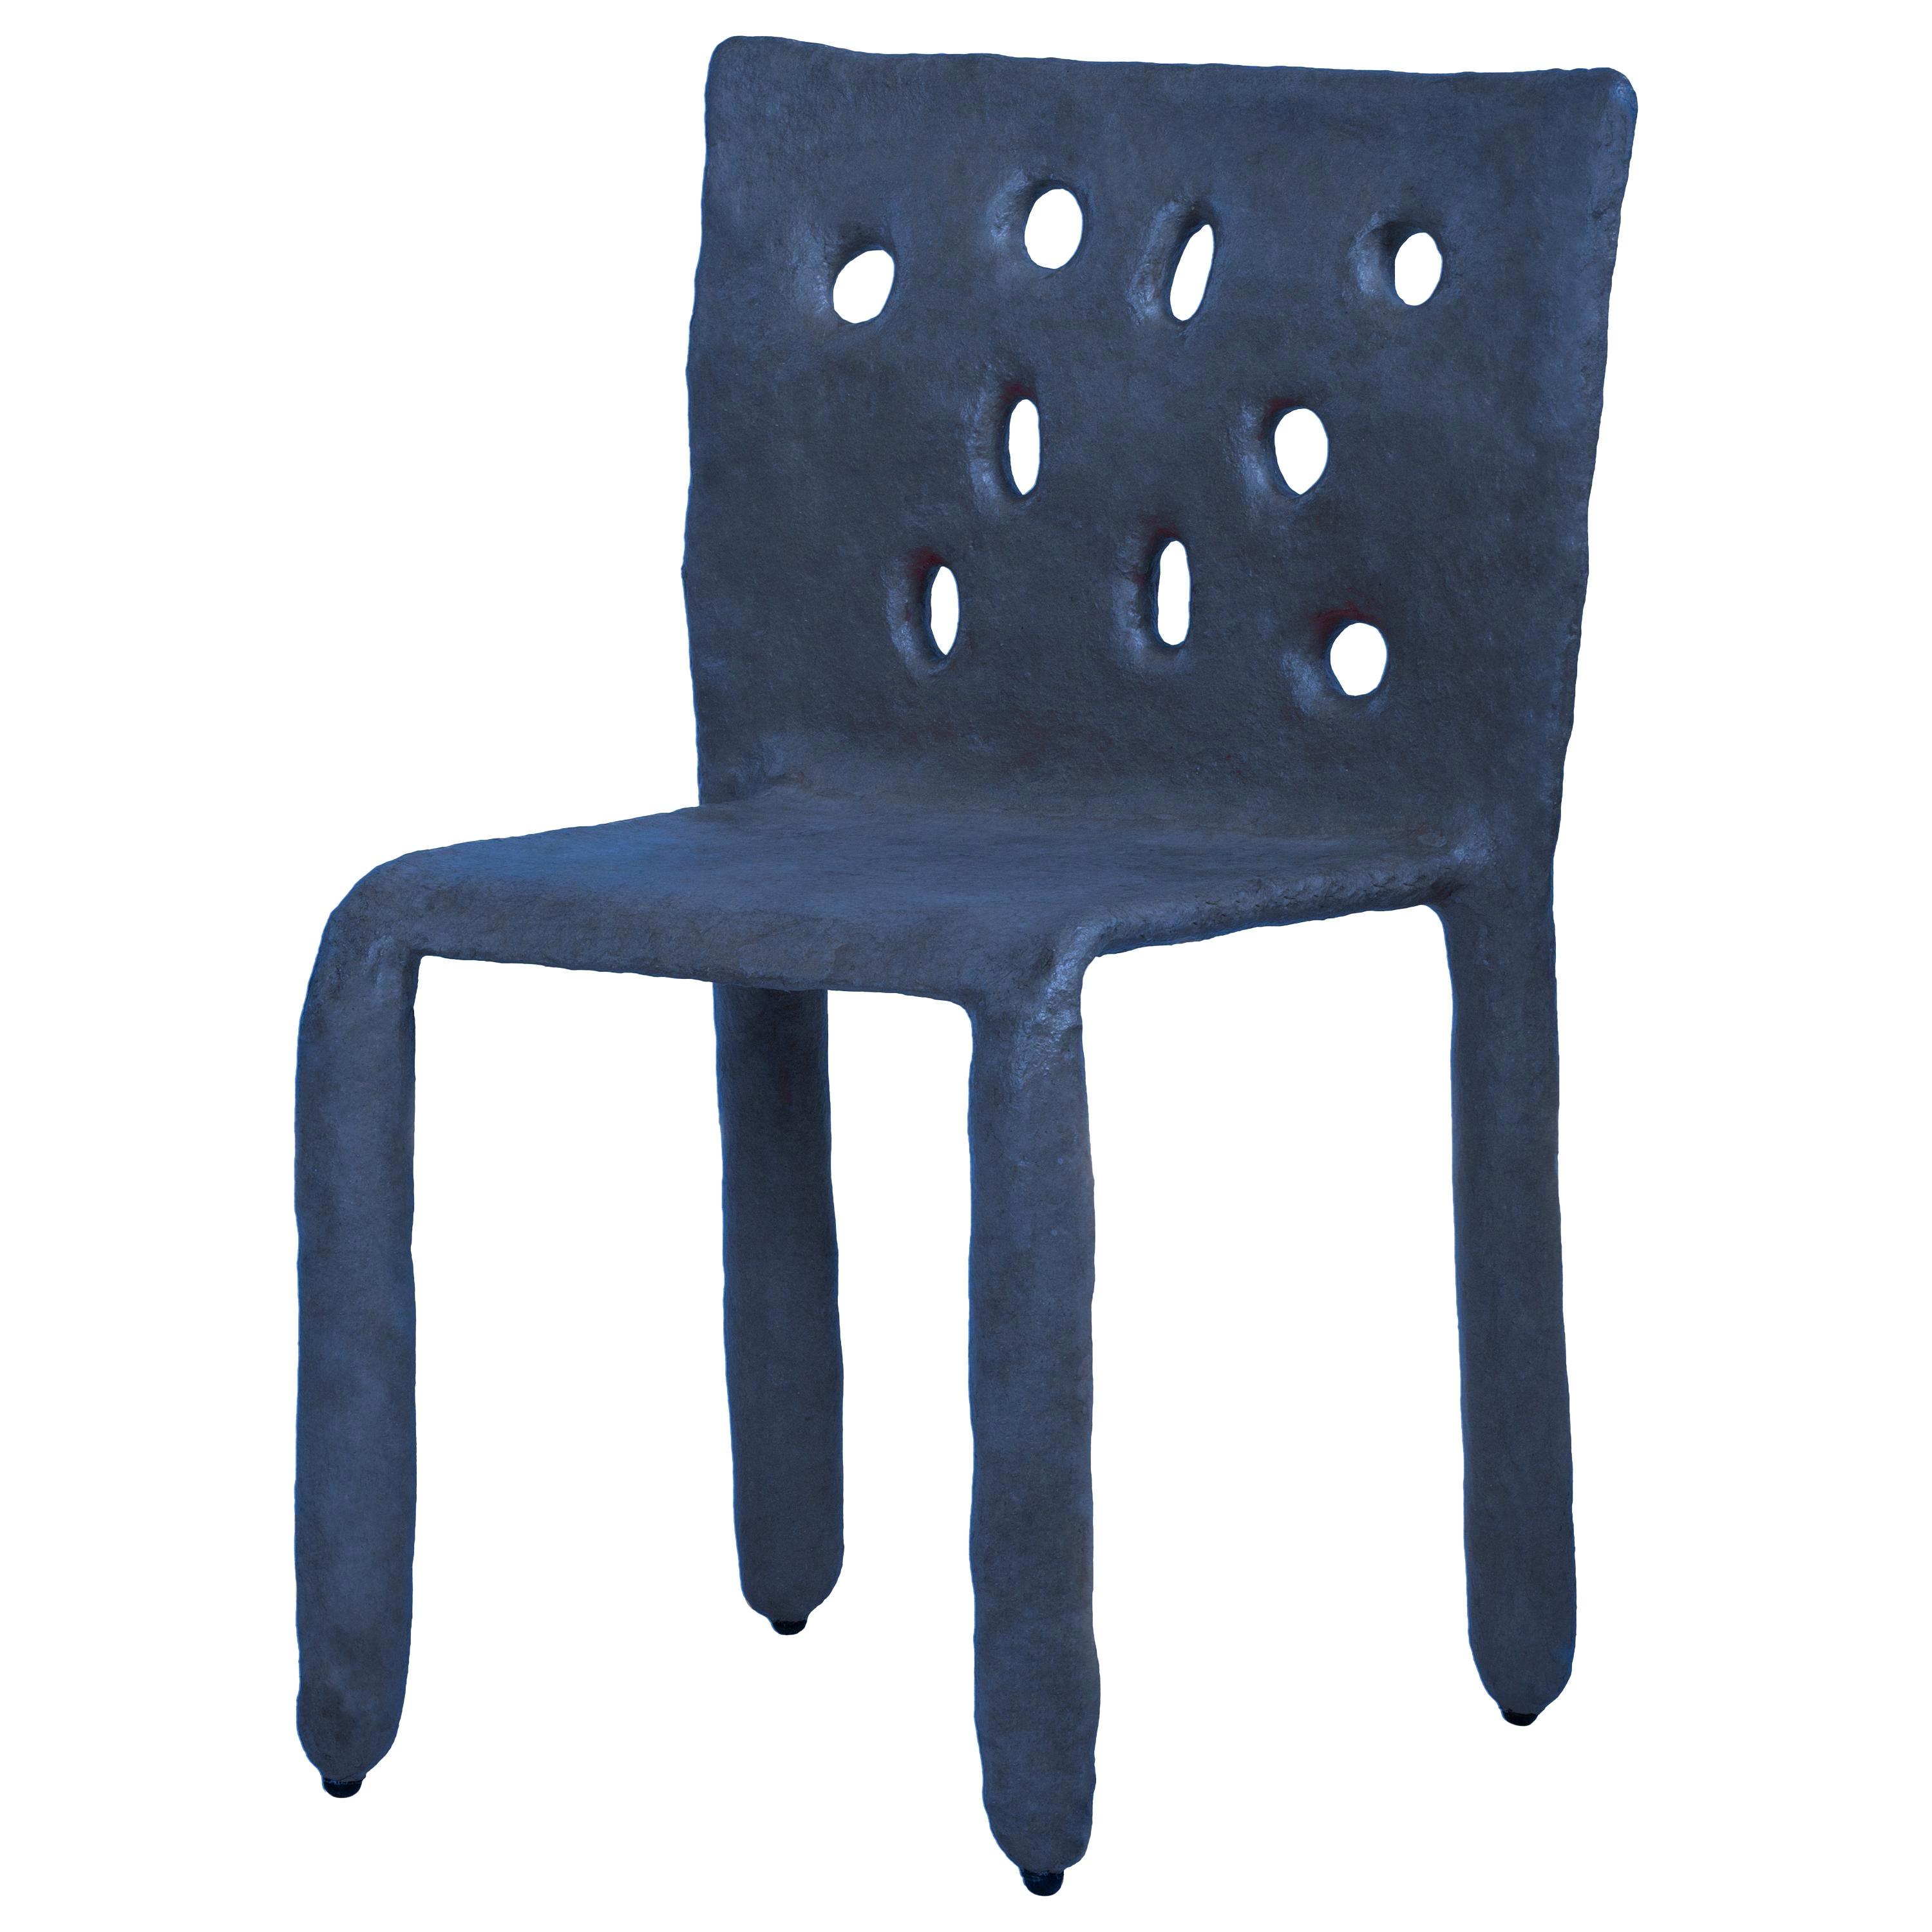 Chaise contemporaine sculptée bleue de FAINA